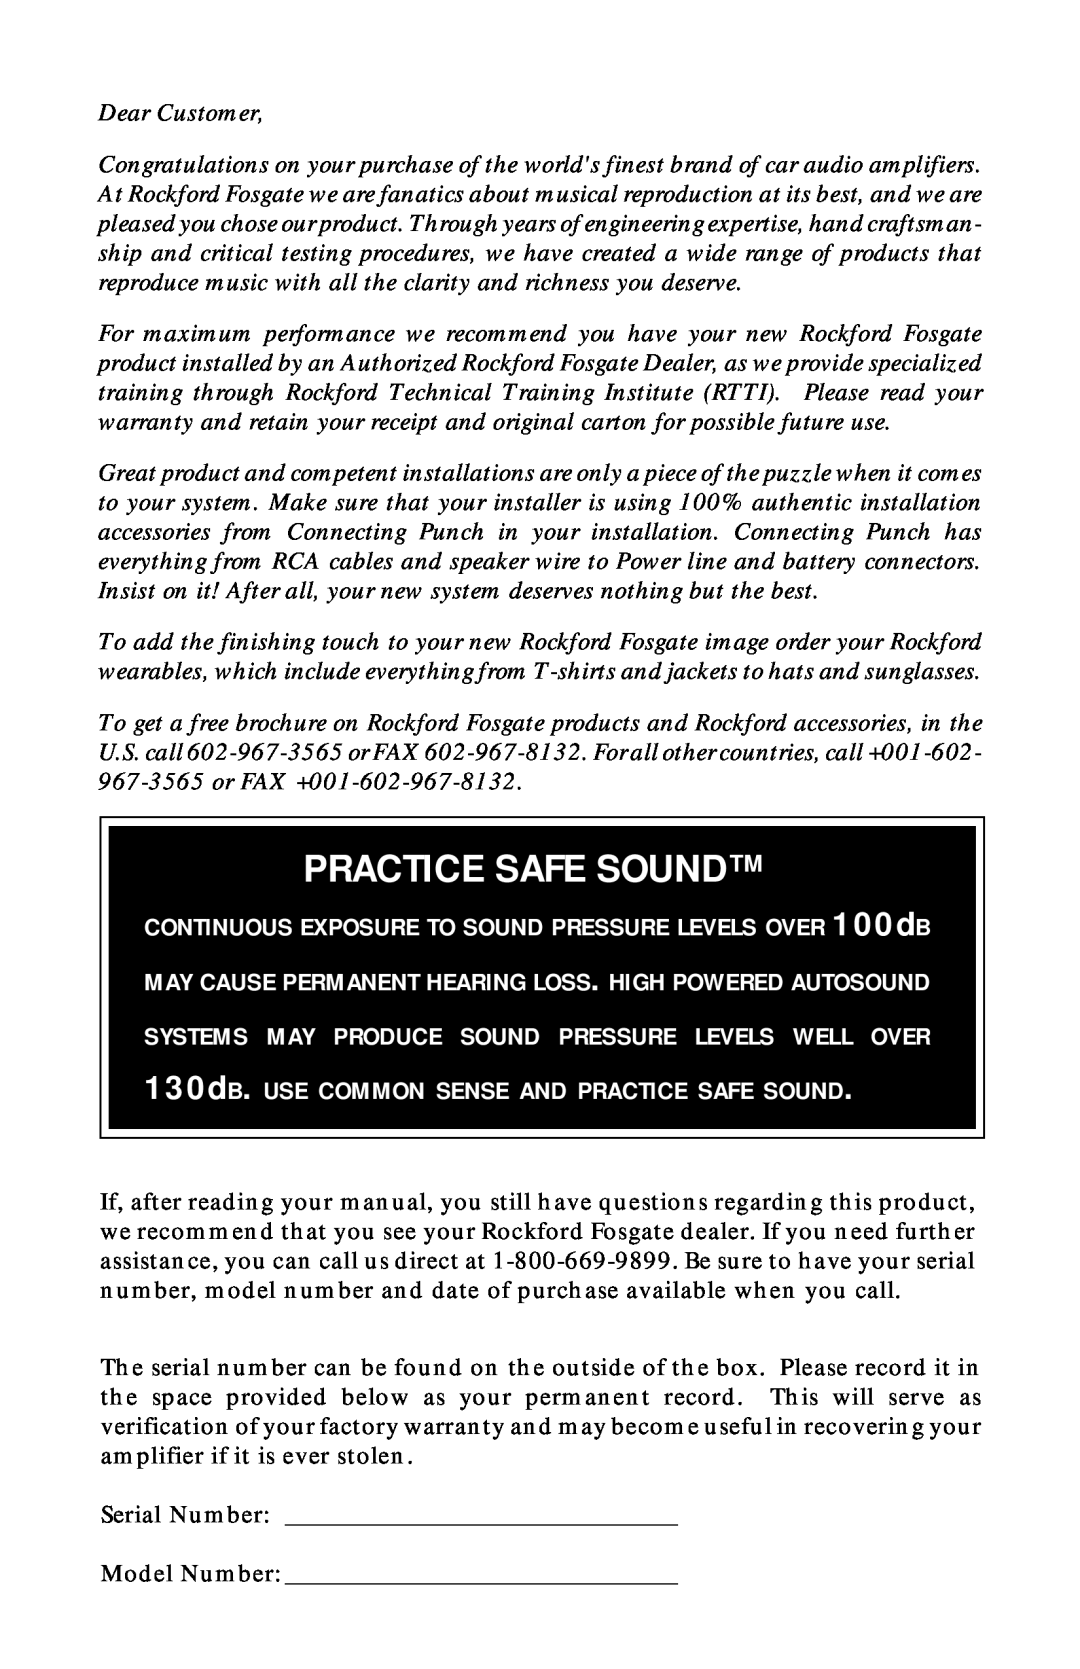 Rockford Fosgate 125.2, 75.2, 55.2, 225.2 manual Practice Safe Sound 